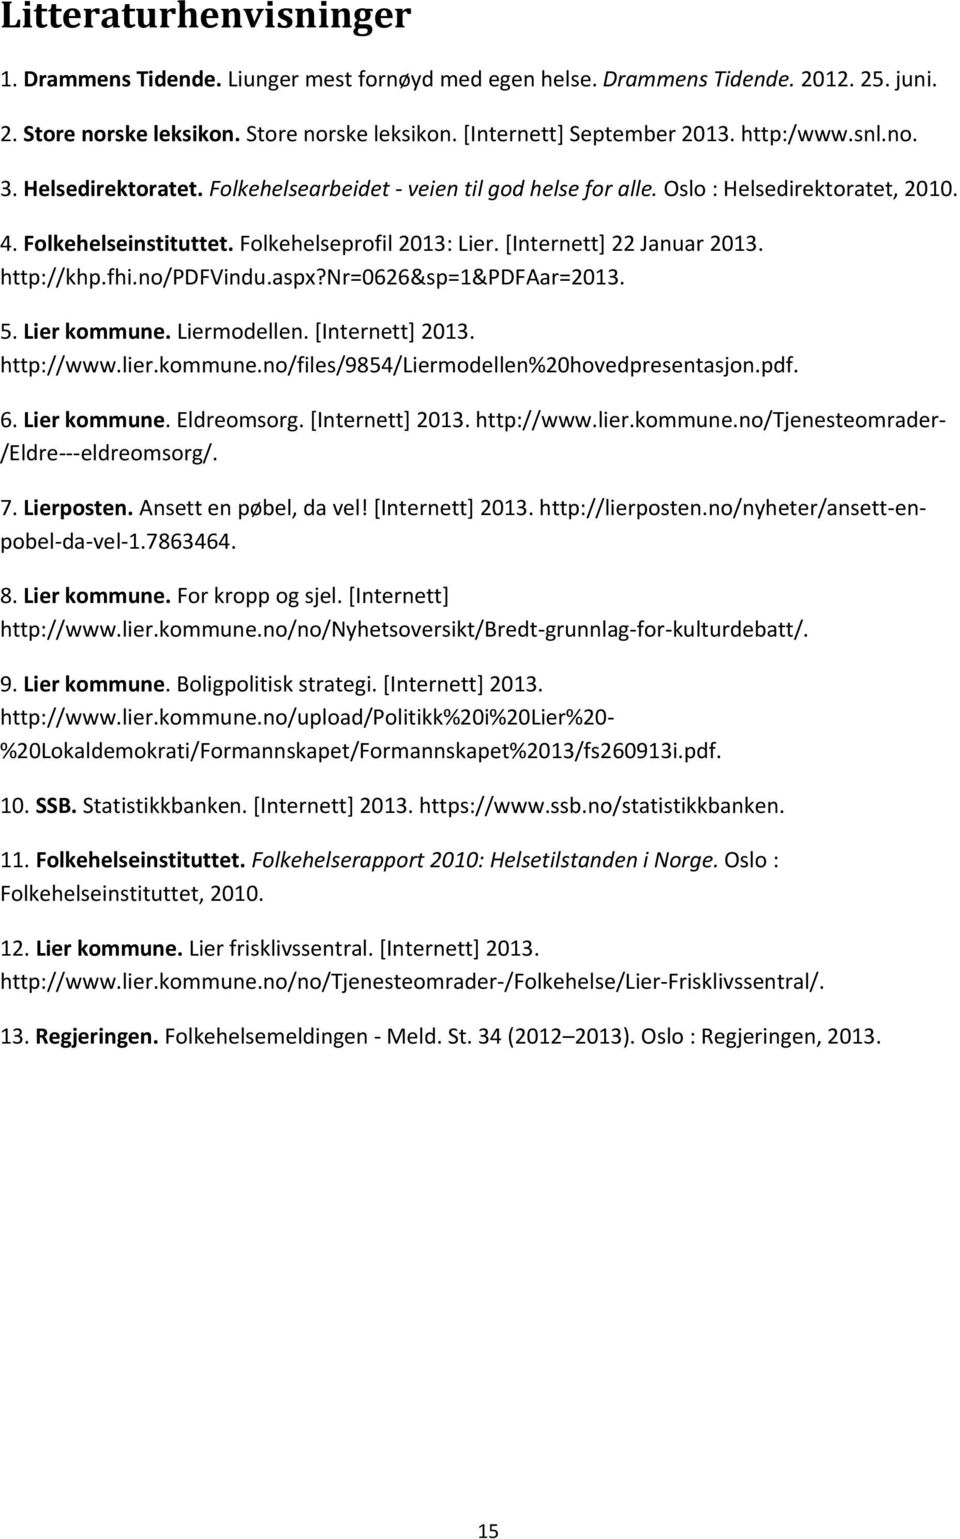 [Internett] 22 Januar 2013. http://khp.fhi.no/pdfvindu.aspx?nr=0626&sp=1&pdfaar=2013. 5. Lier kommune. Liermodellen. [Internett] 2013. http://www.lier.kommune.no/files/9854/liermodellen%20hovedpresentasjon.